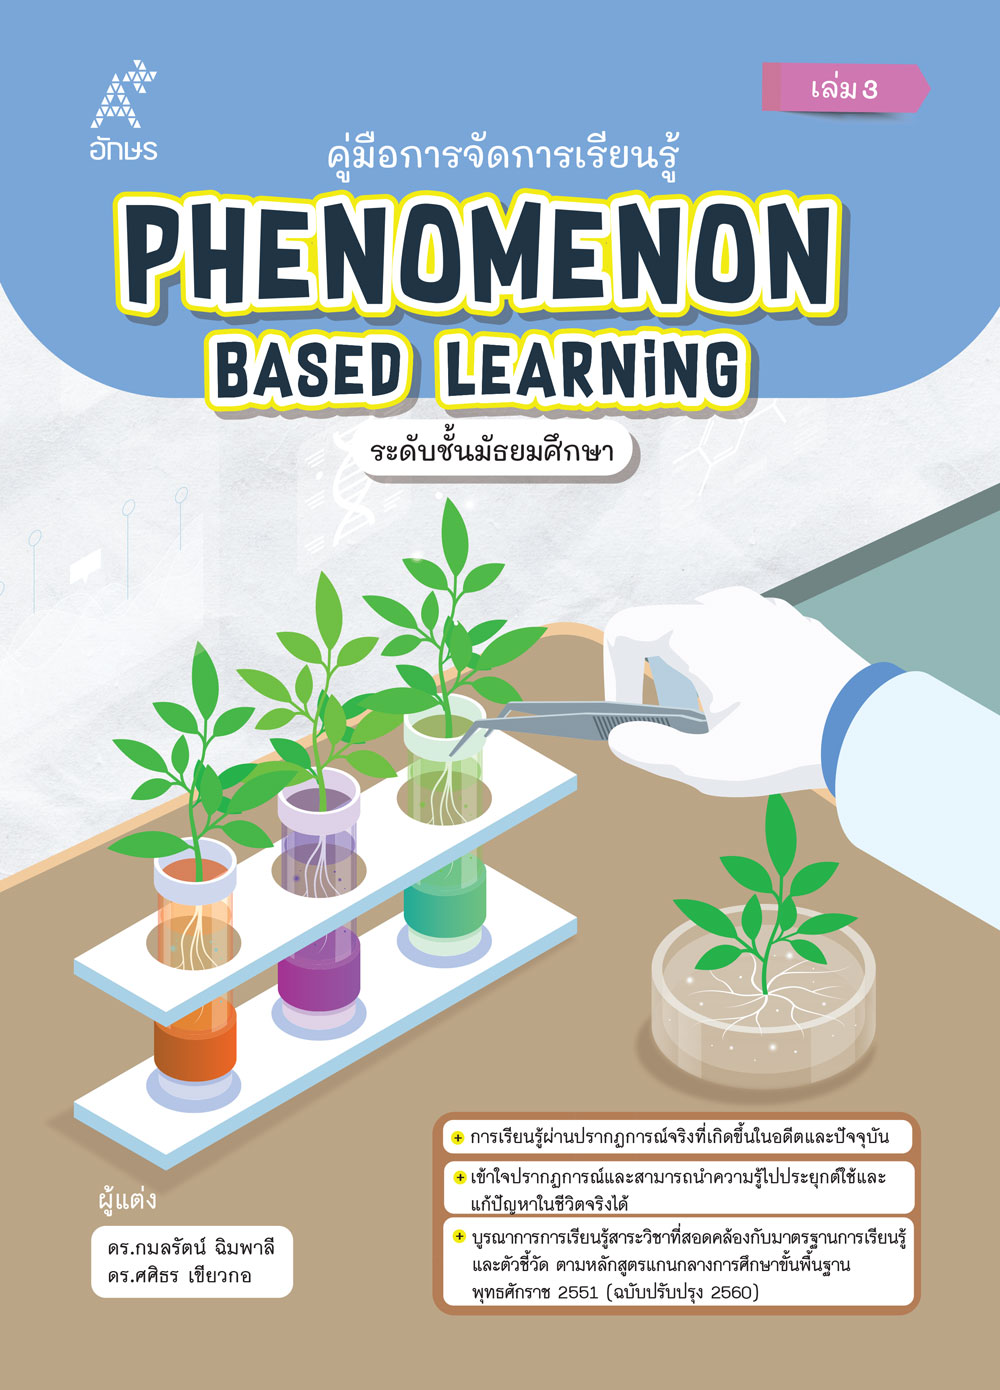 คู่มือการจัดการเรียนรู้ Phenomenon Based Learning ระดับชั้นมัธยมศึกษา เล่ม 3 (Coming soon)